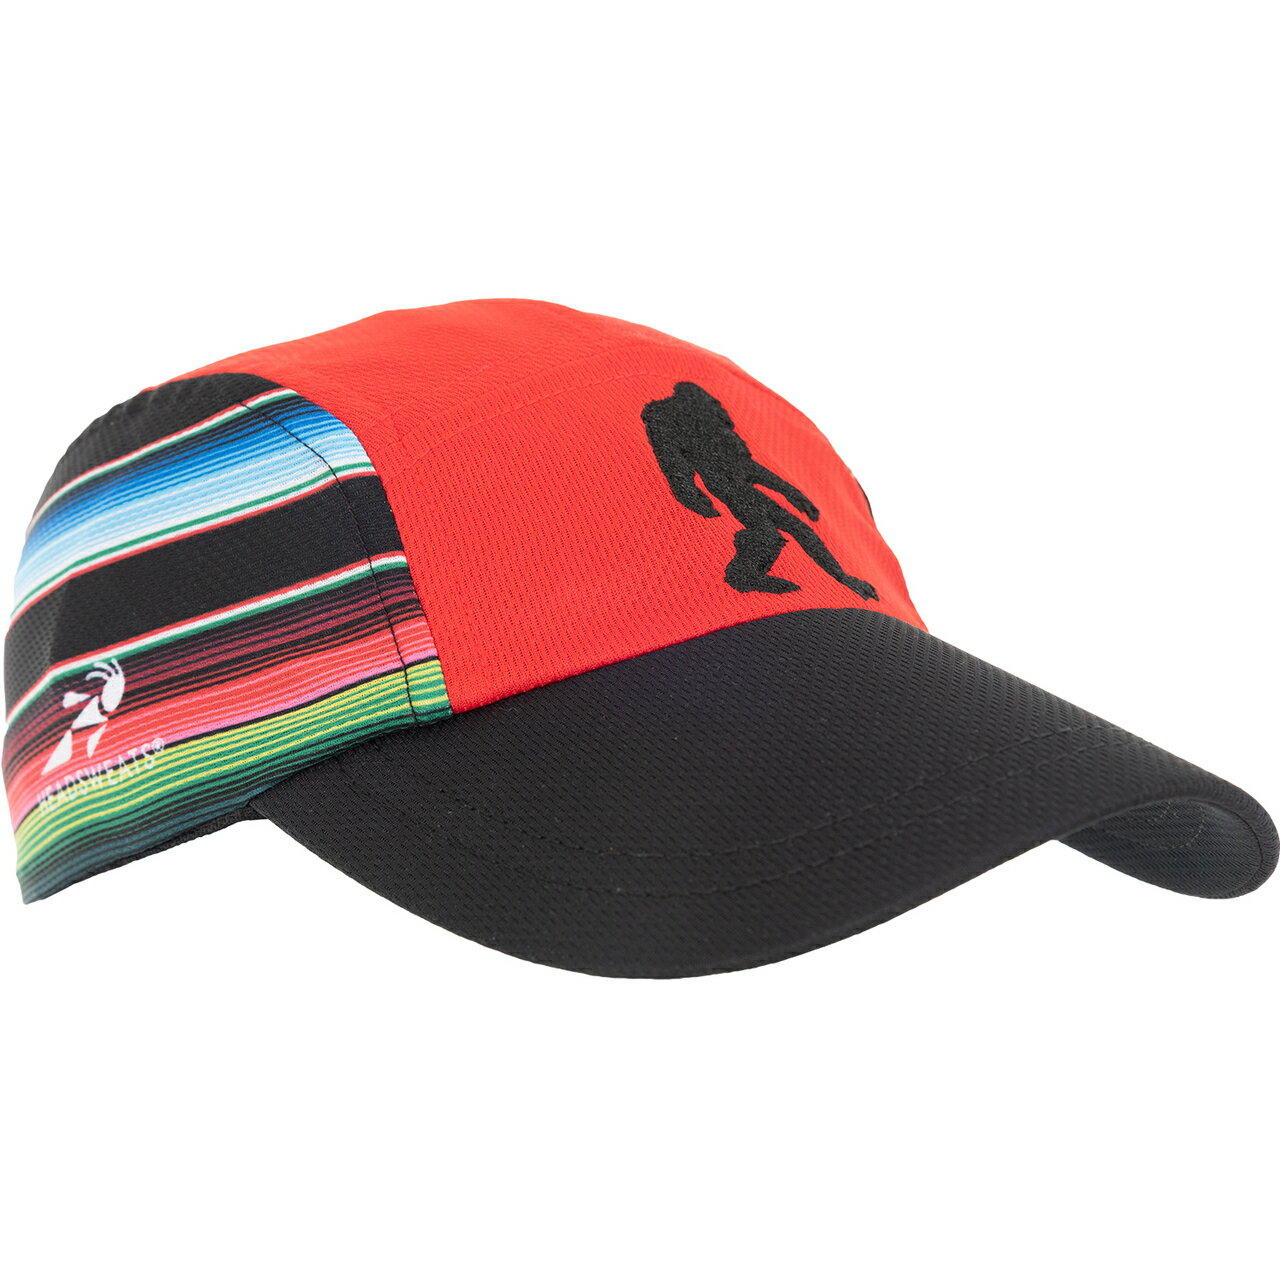 美國汗淂HEADSWEATS運動衣/帽.Race Hat | Bigfoot Baja. 騎跑泳/勇者-陪你快樂玩跑!